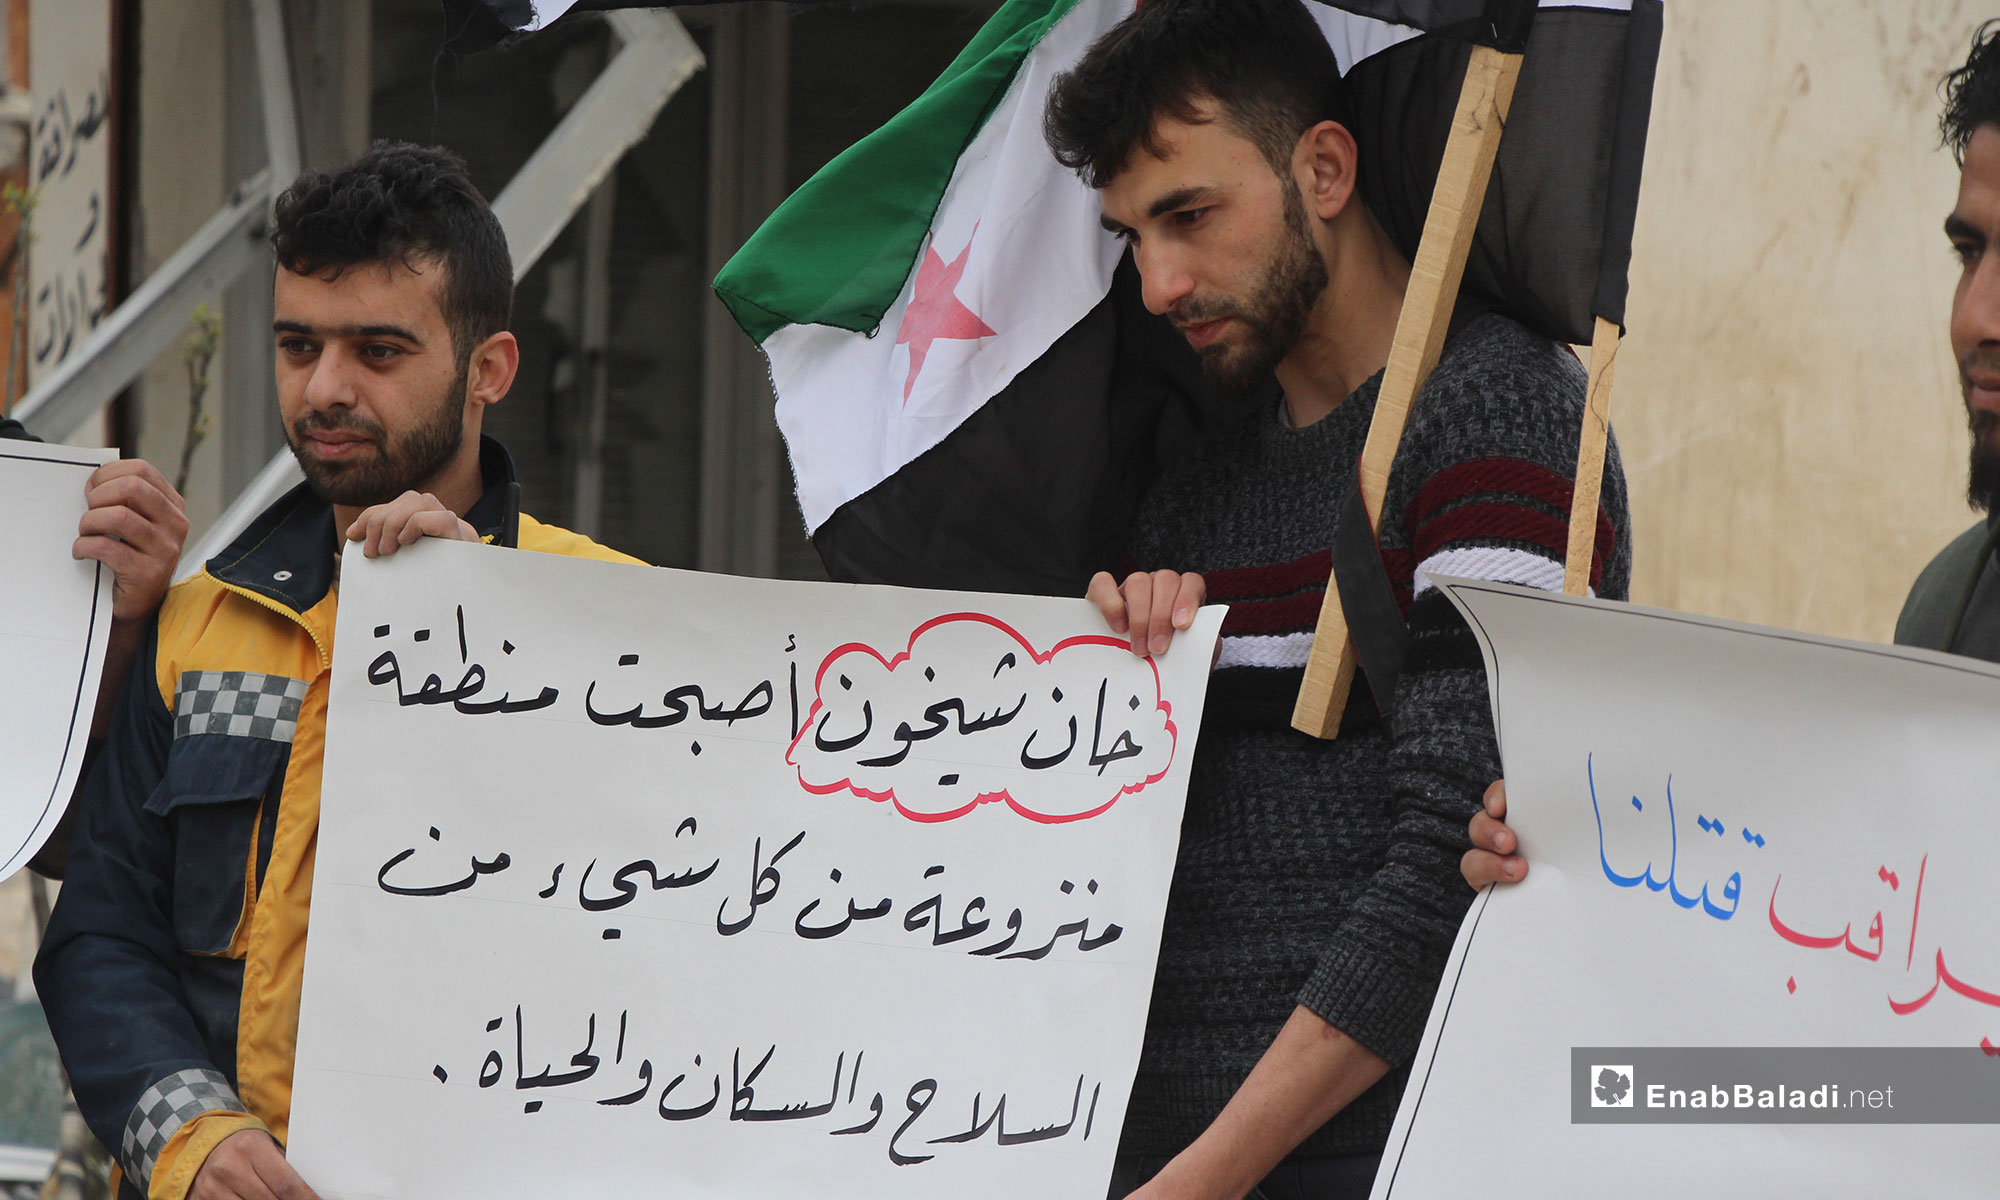 في الذكرى الثامنة للثورة السورية مظاهرة في خان شيخون بريف إدلب - 15 من آذار 2019 (عنب بلدي)